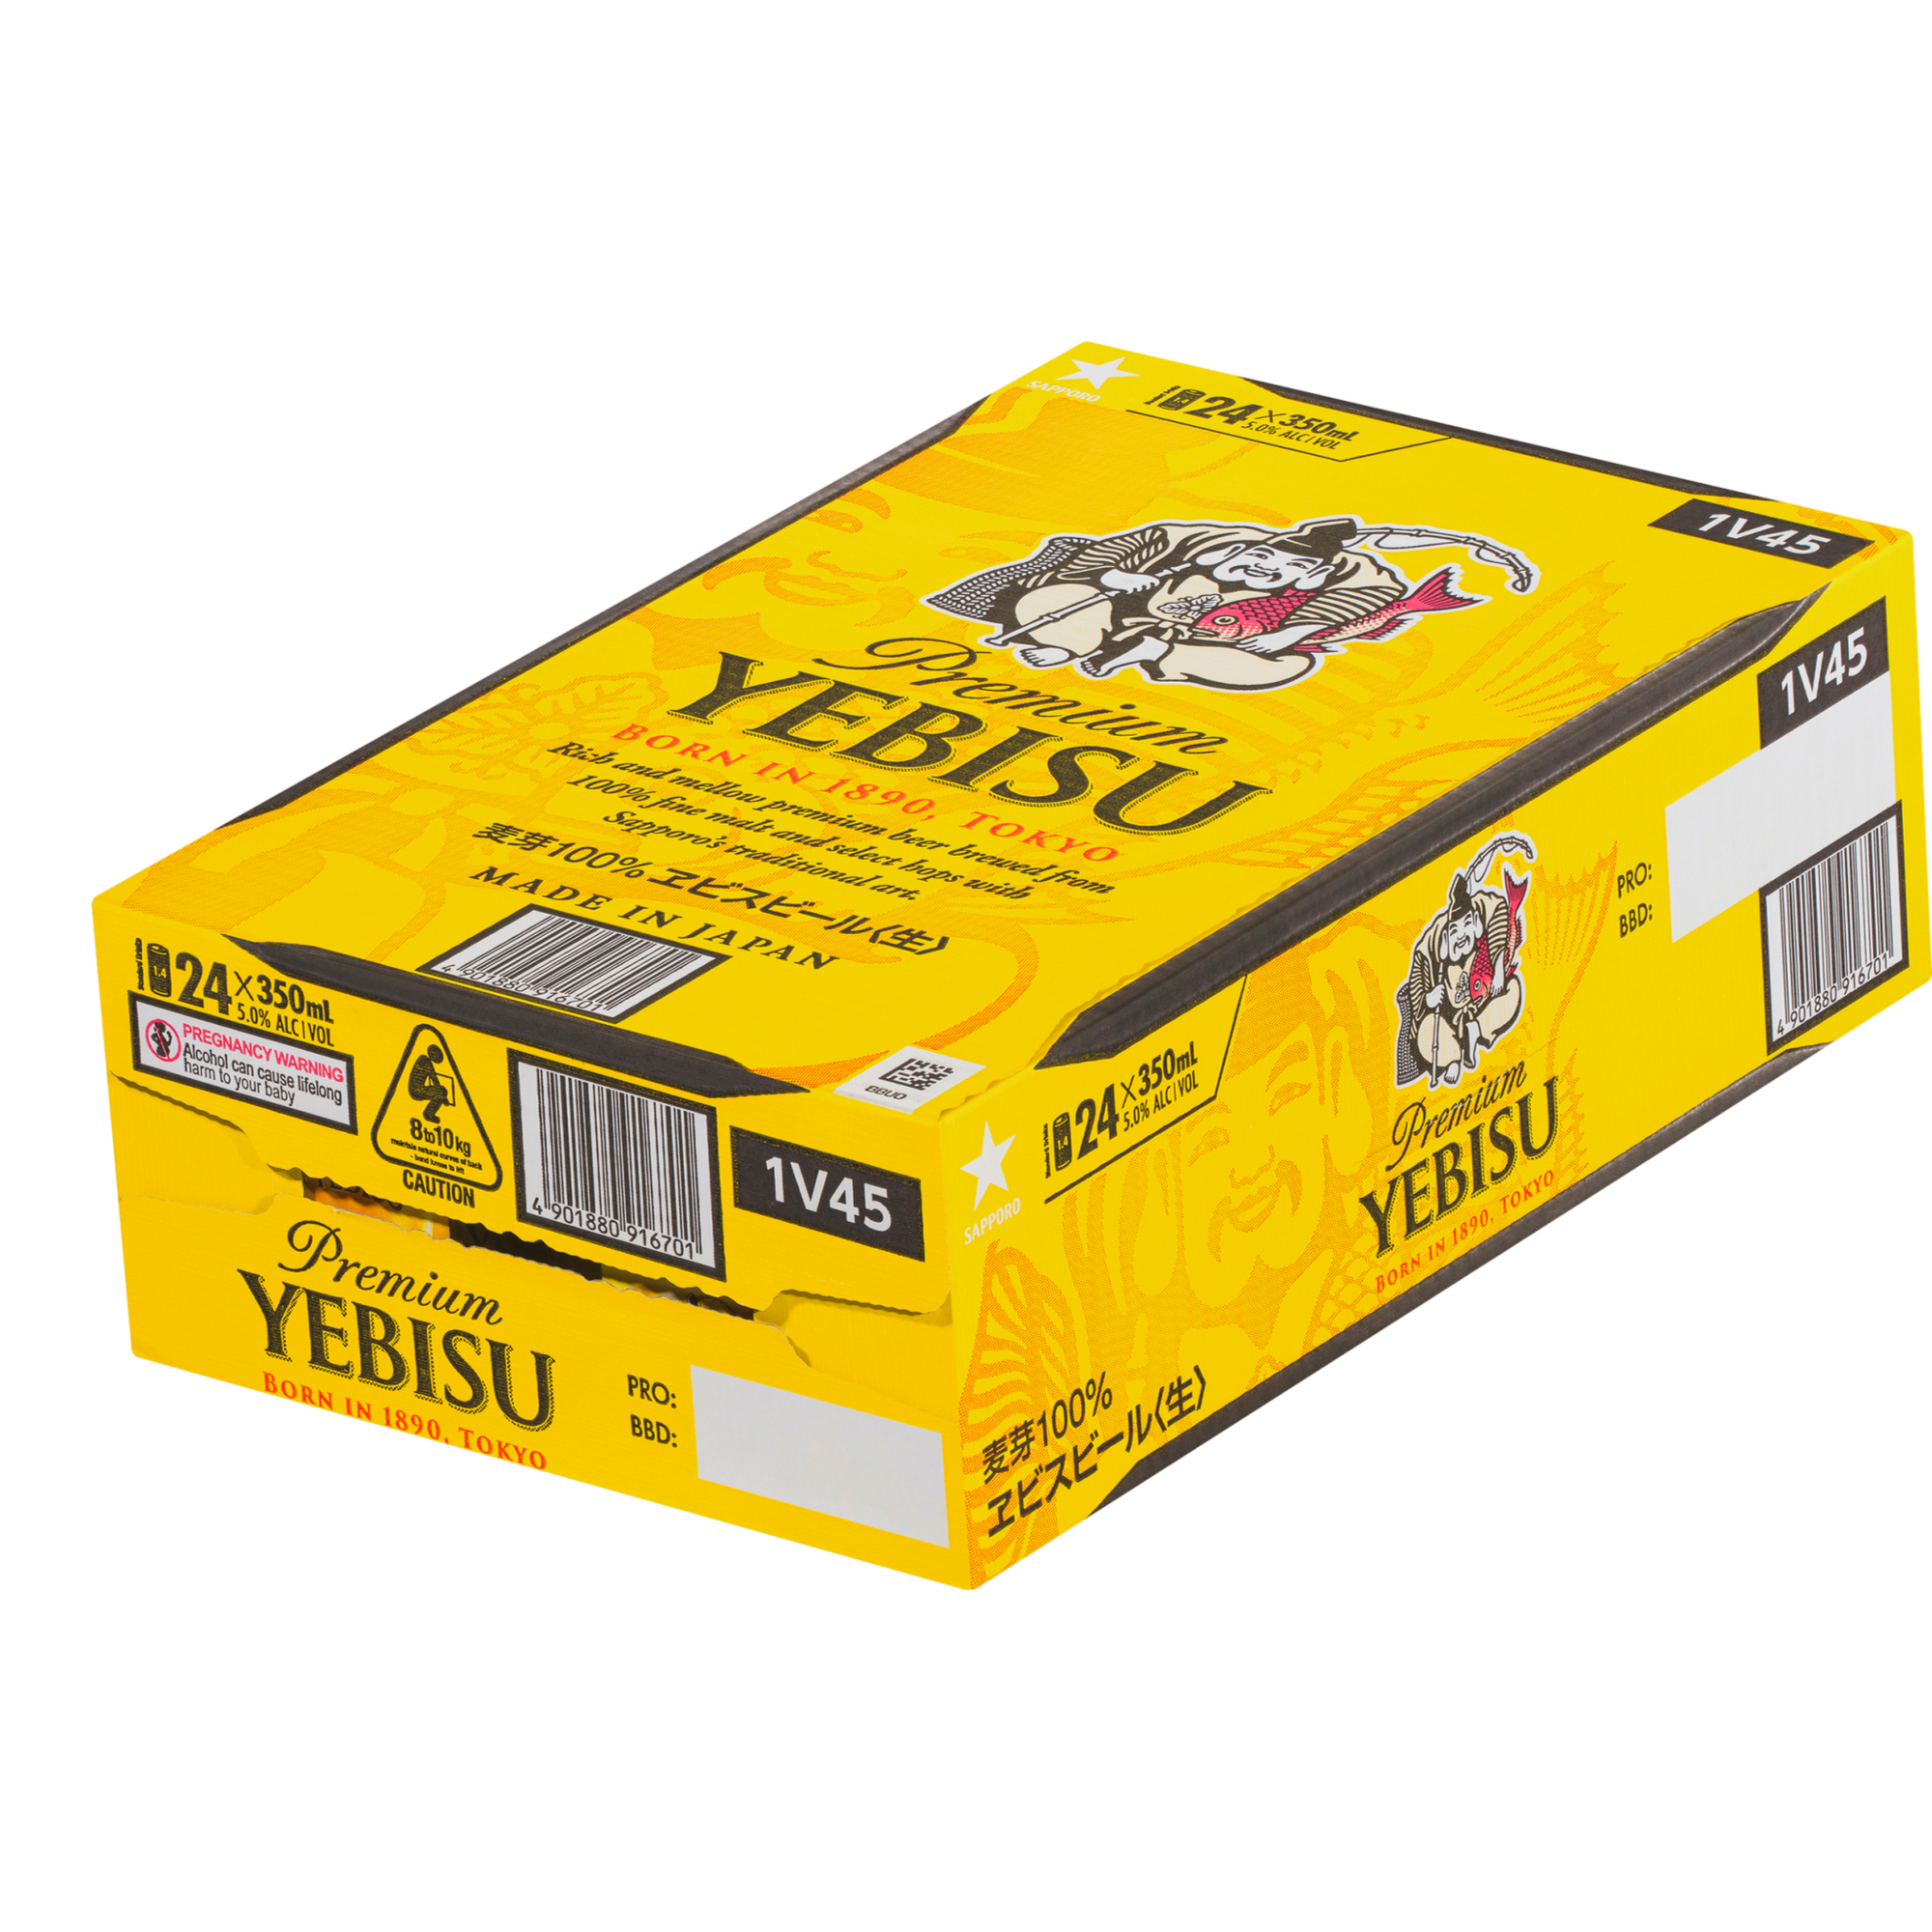 Yebisu Premium Malt Lager 350ml Can Case of 24